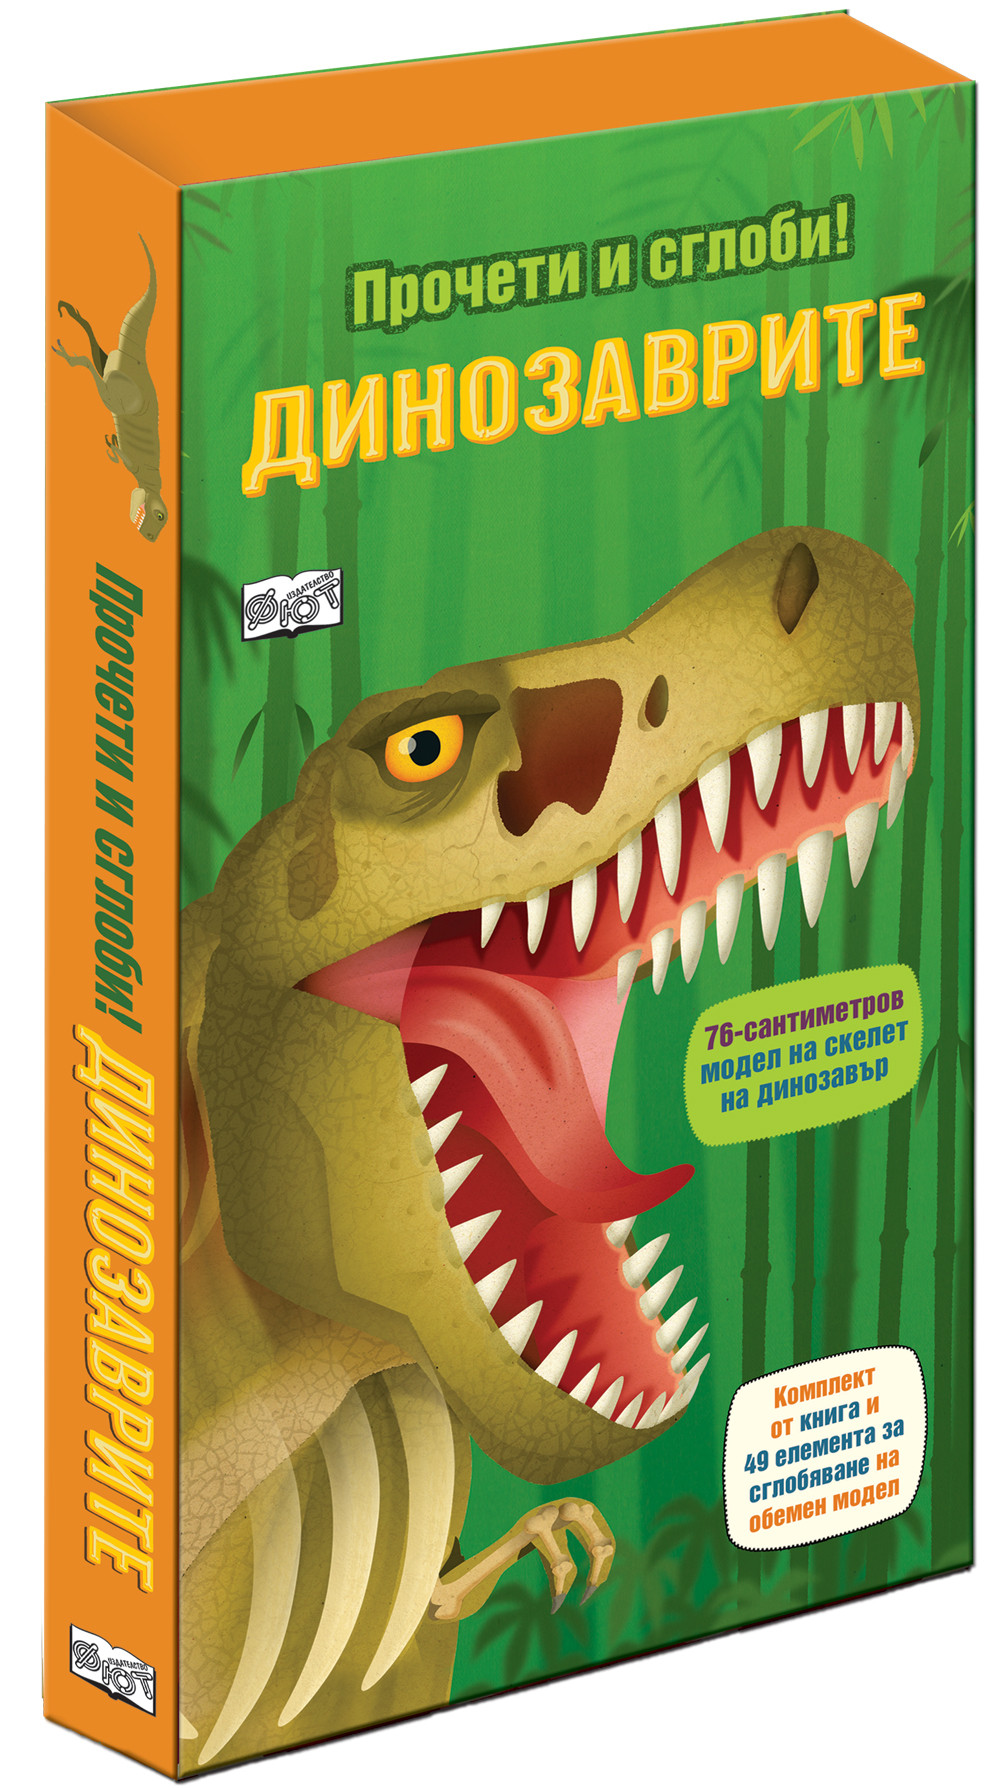 Динозаврите - прочети и сглоби! 